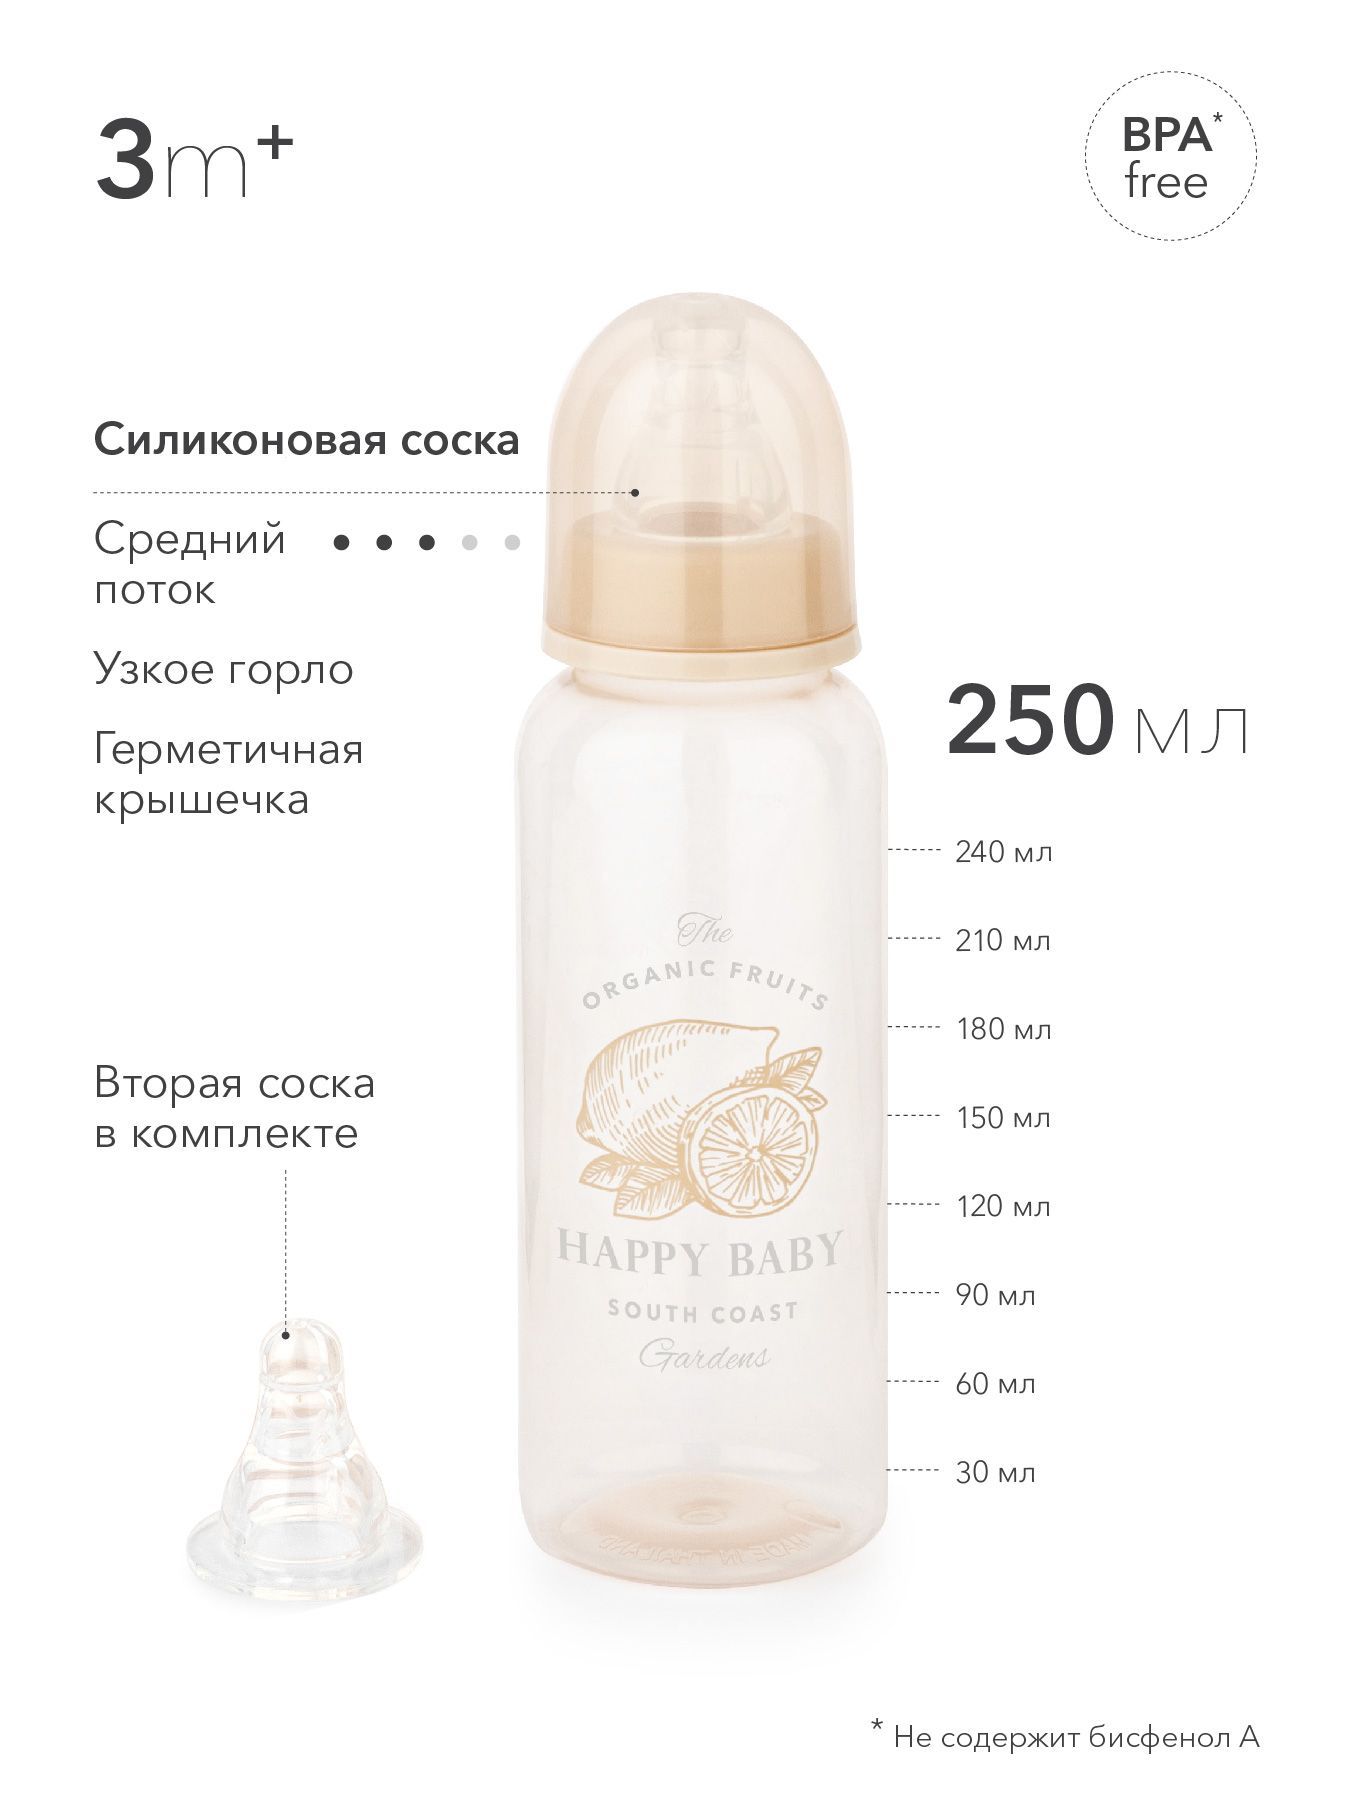 Бутылочка с 2 силиконовыми сосками 250 мл. Happy Baby